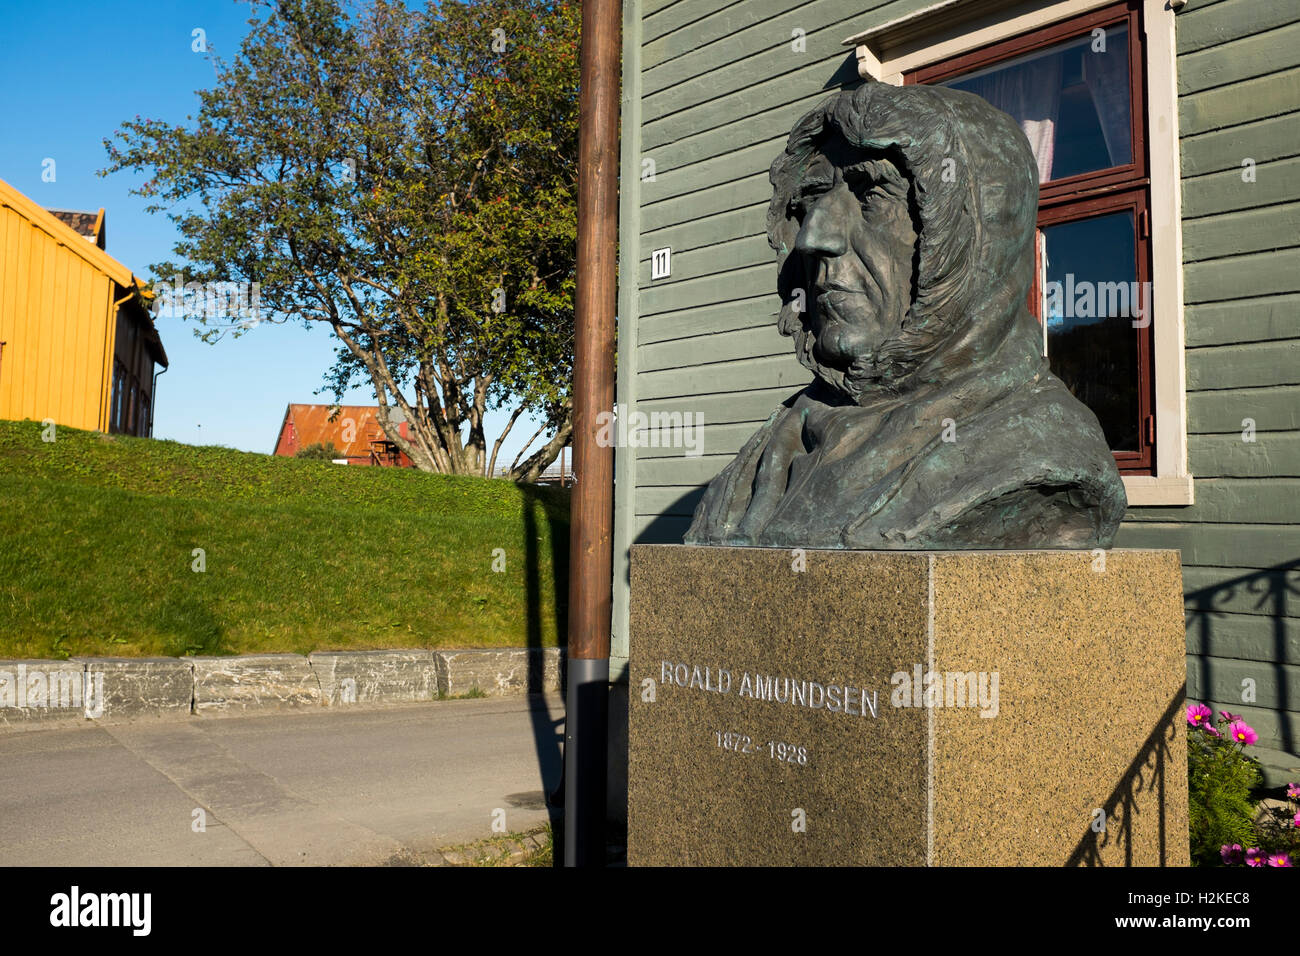 Statua di Polare Norvegese Explorer Roald Amundsen presso il museo polare in Tromso, Norvegia. Foto Stock